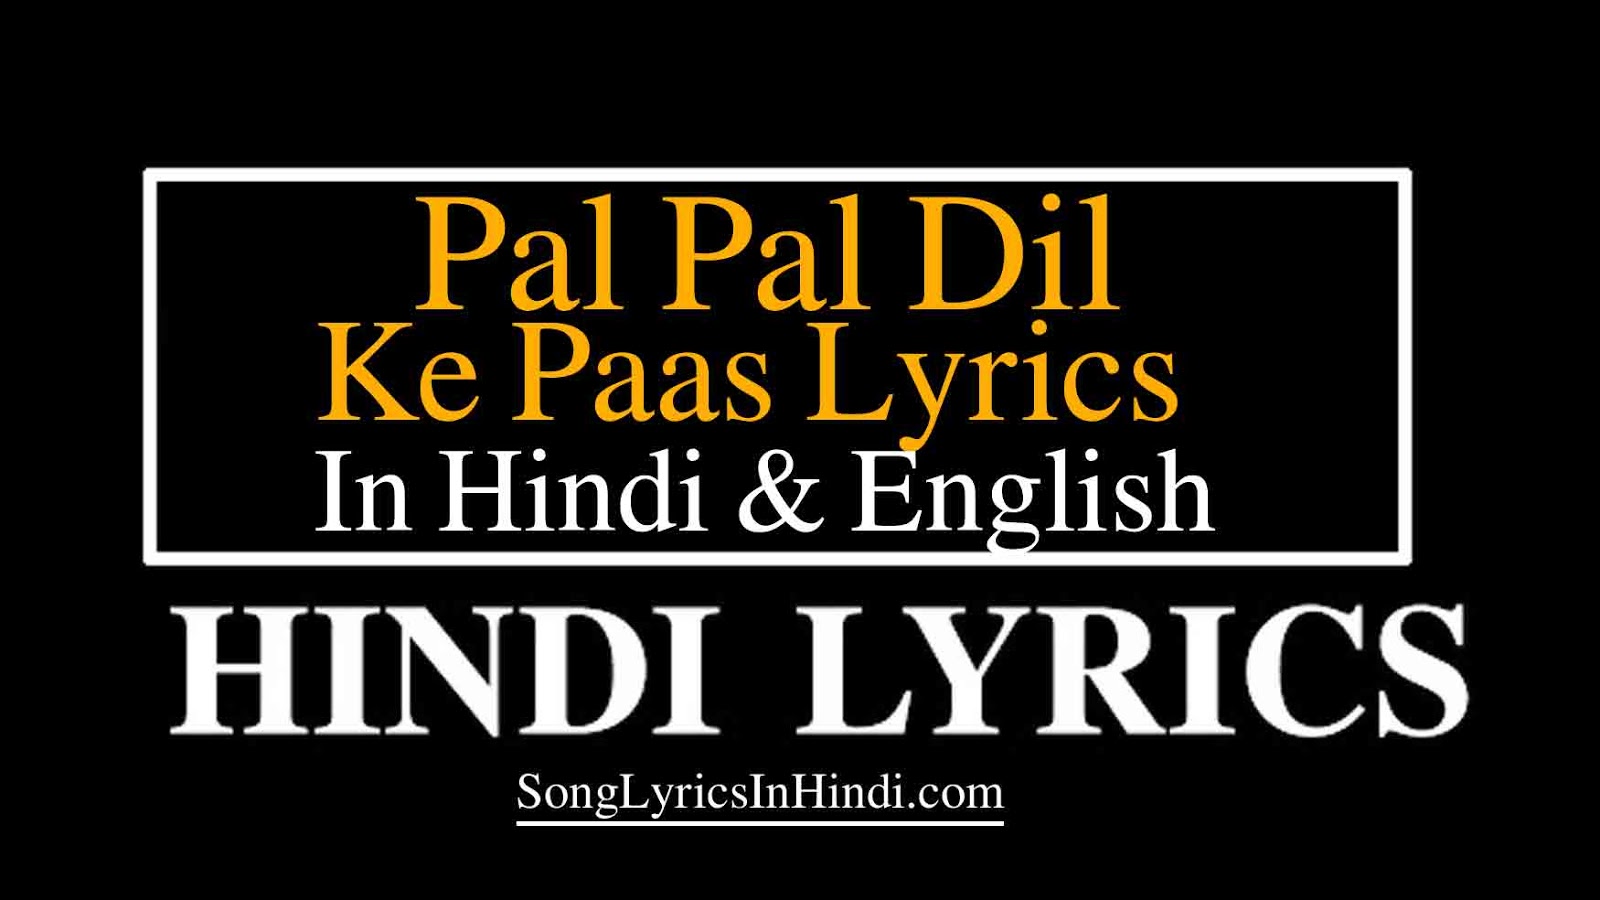 Pal Pal Dil Ke Paas Lyrics In Hindi